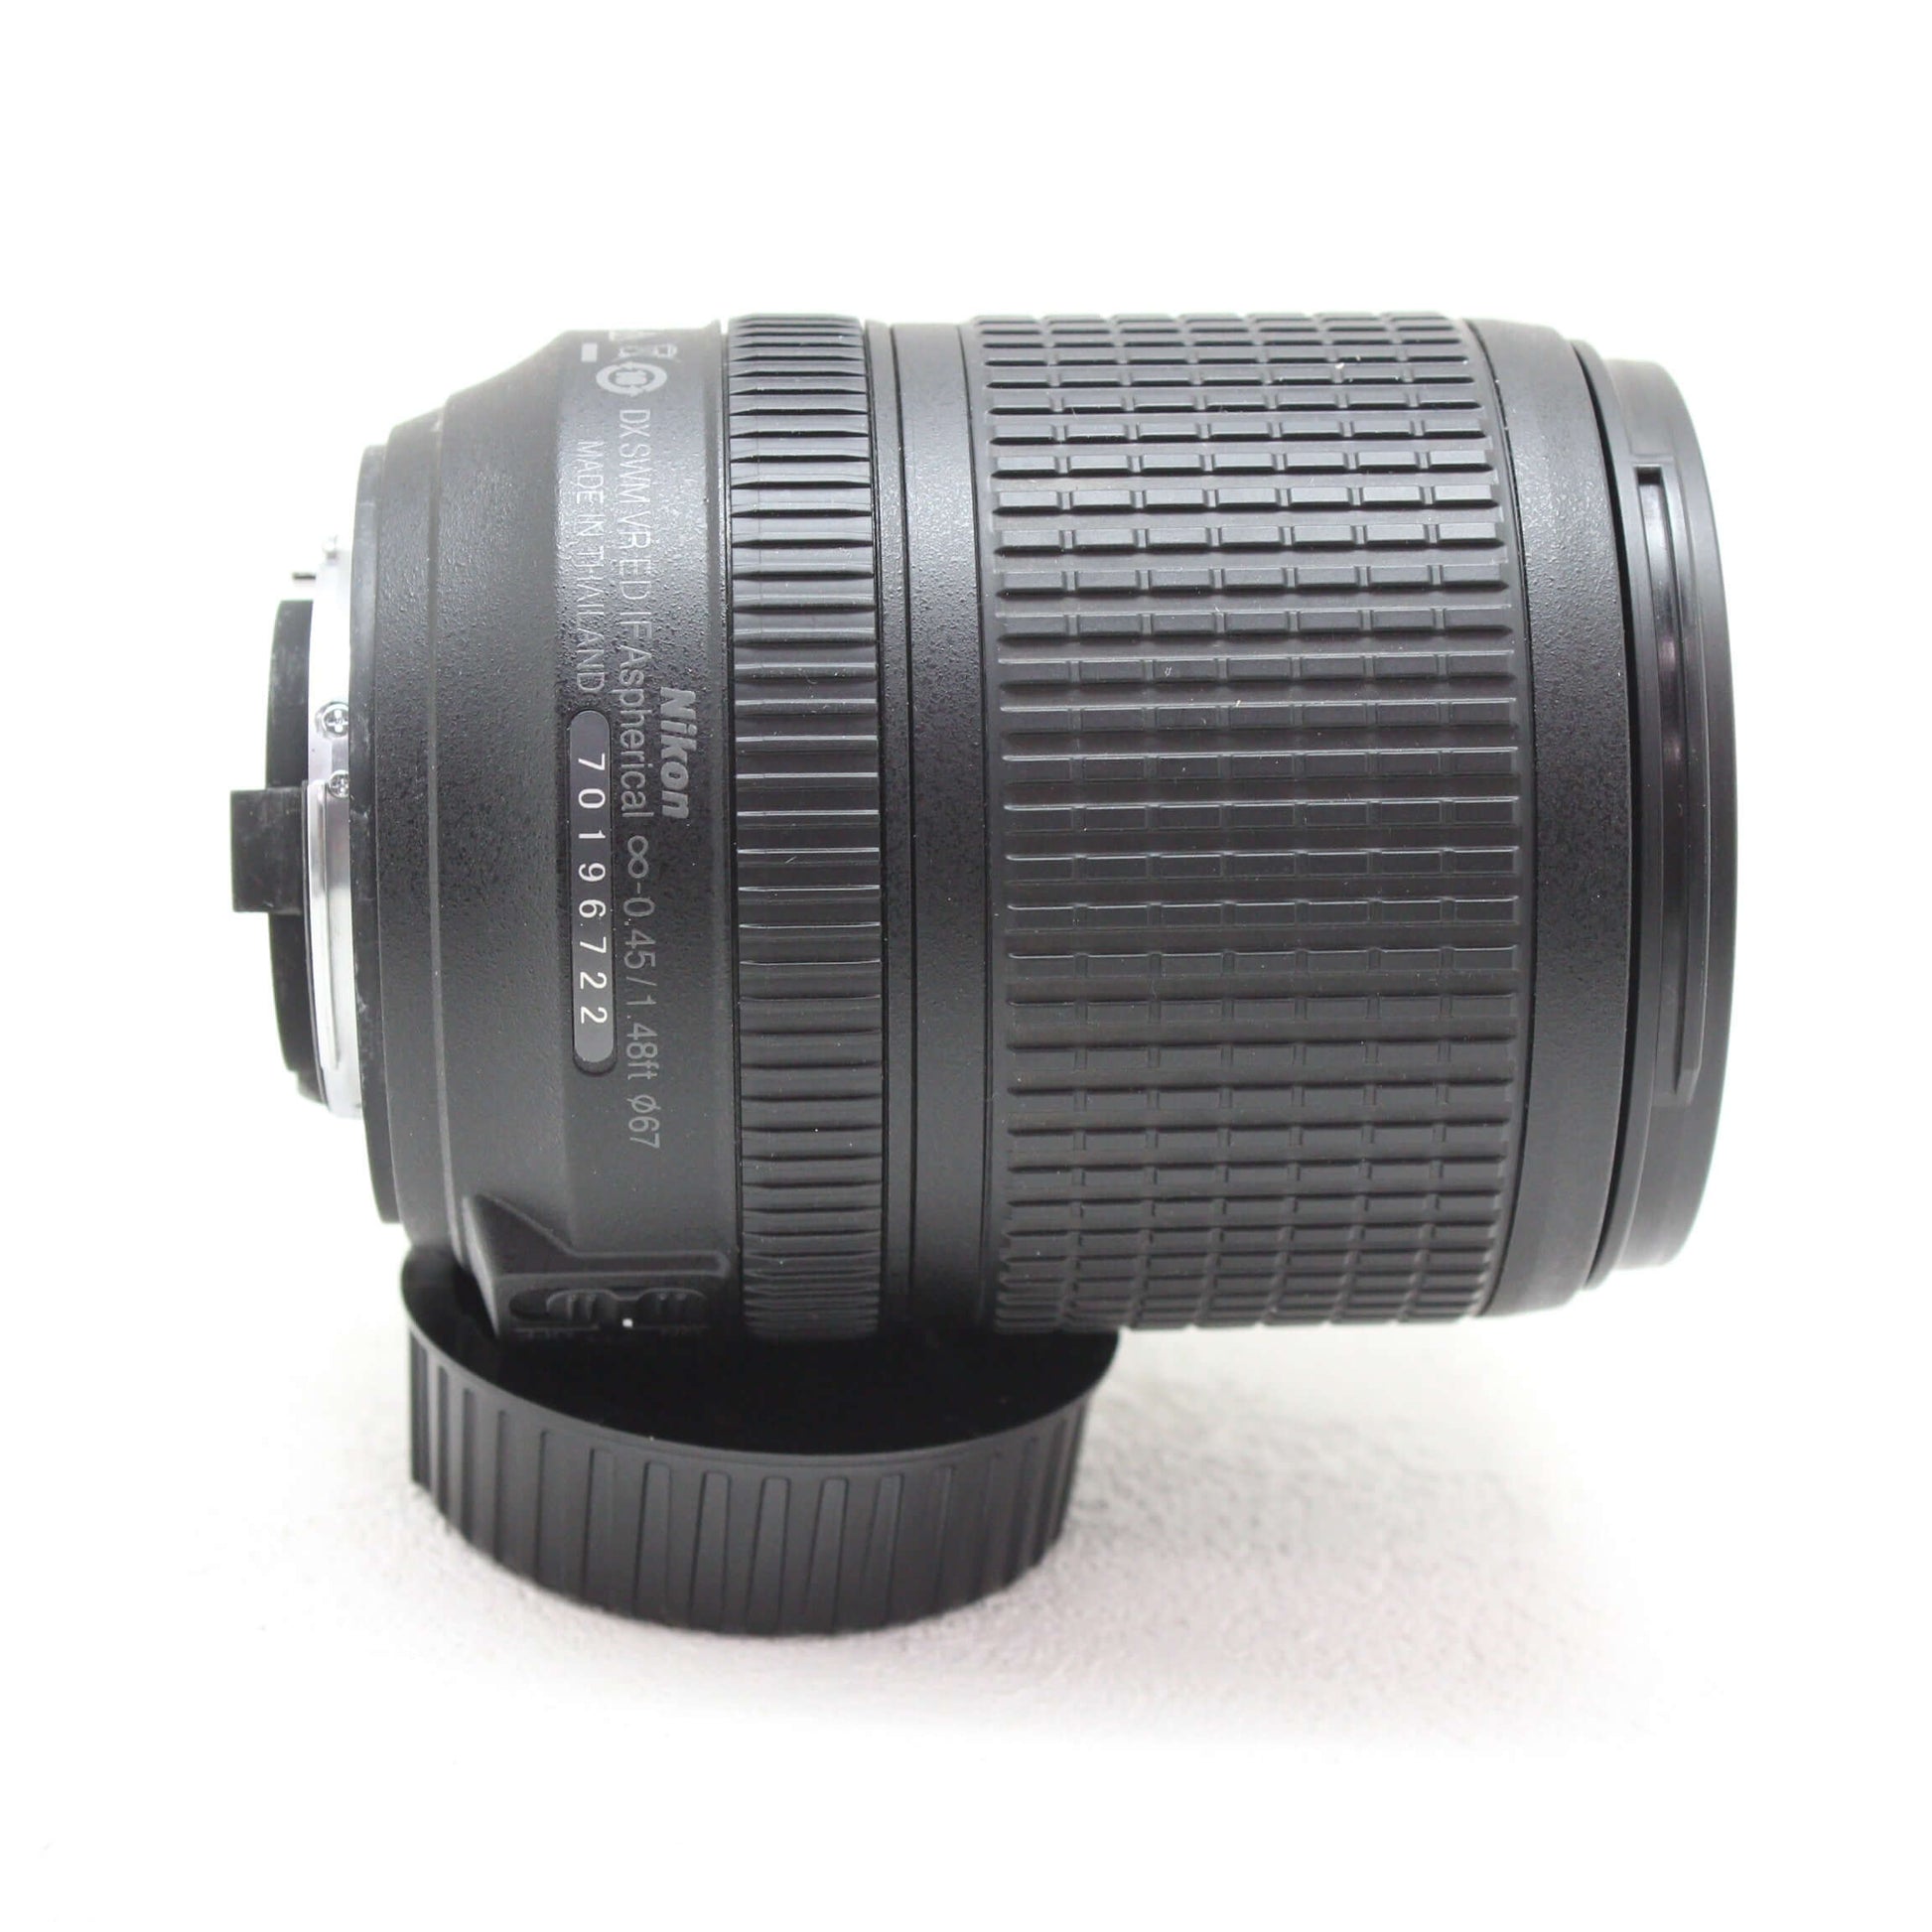 中古品 Nikon AF-S DX 18-140mm F3.5-5.6G ED VR